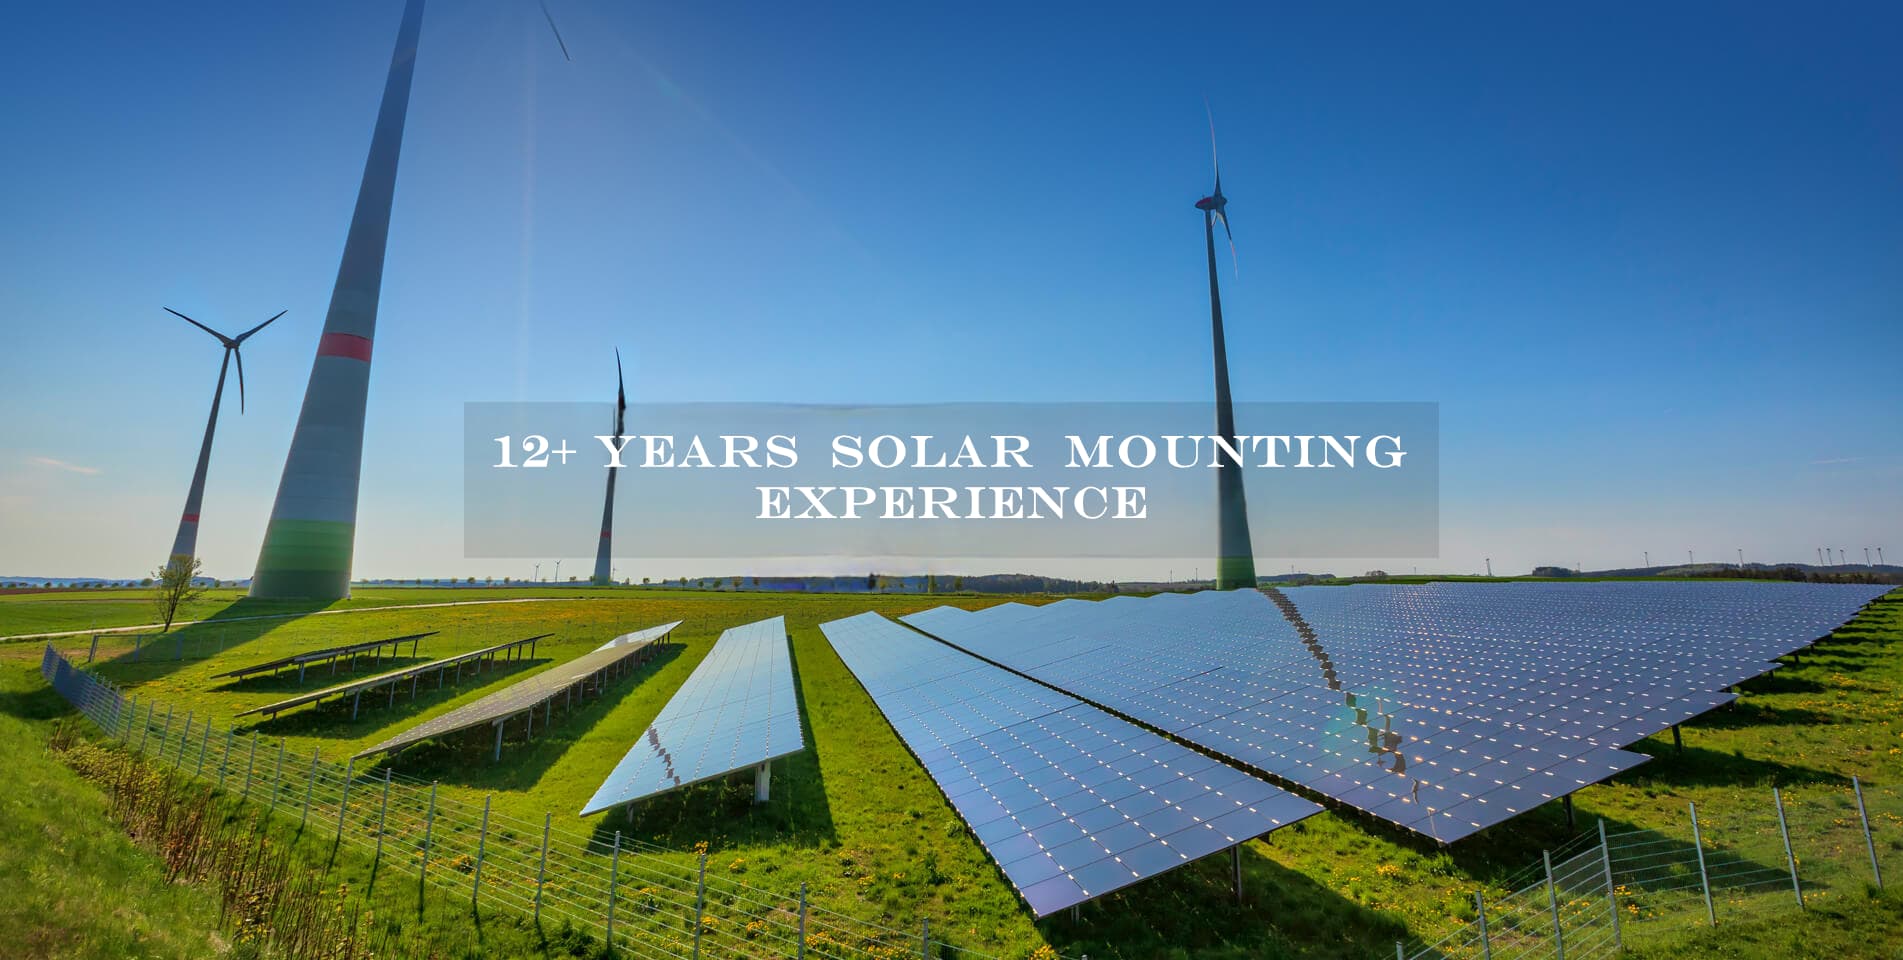 Über 12 Jahre Erfahrung in der Solarmontage